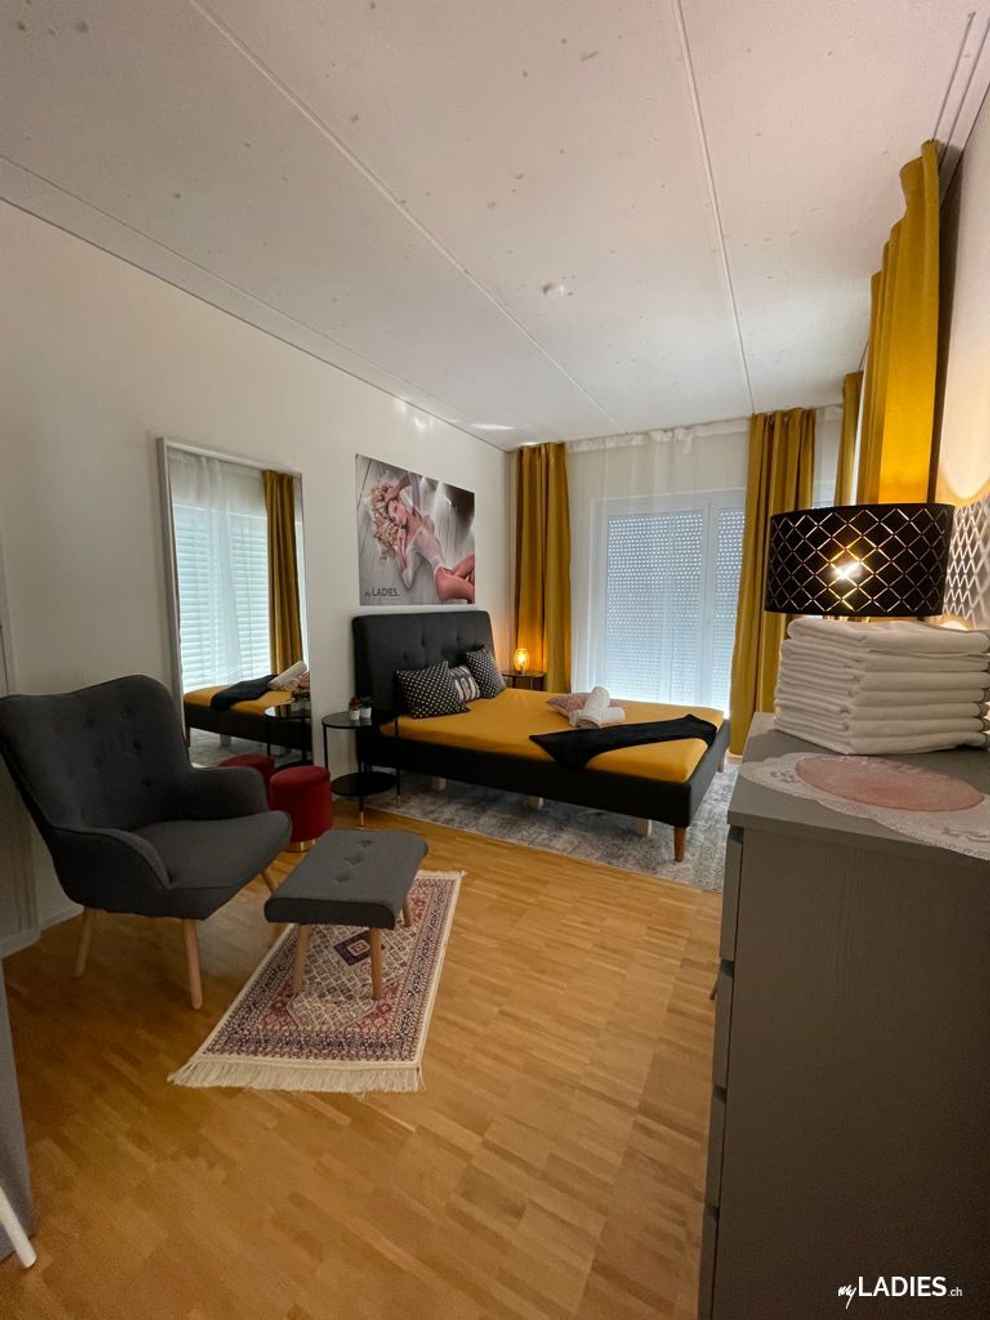 Zimmer / Rooms / Habitaciones in Einsiedeln / Bild 6